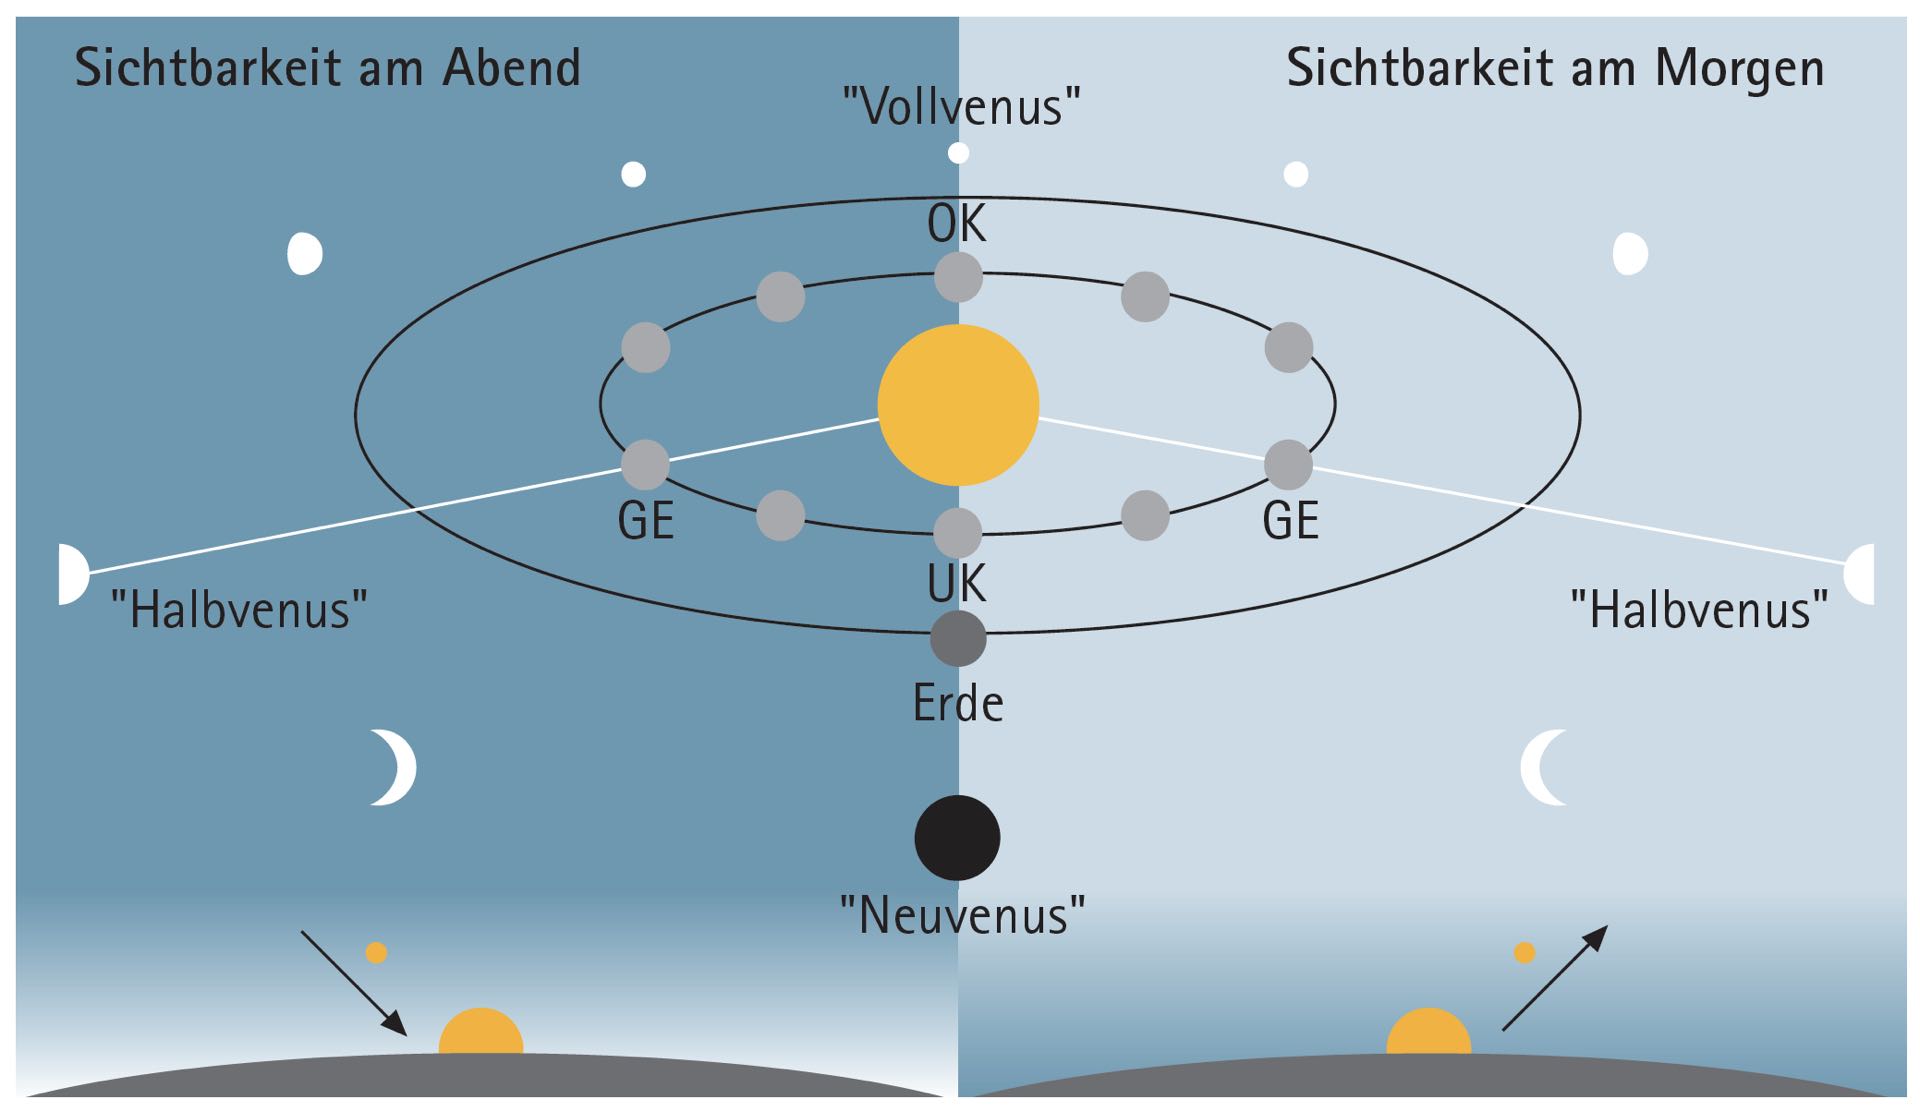 Diferitele poziții ale planetei Venus și fazele sale. (OK: conjuncție superioară, UK: conjuncție inferioară, GE: elongație maximă)